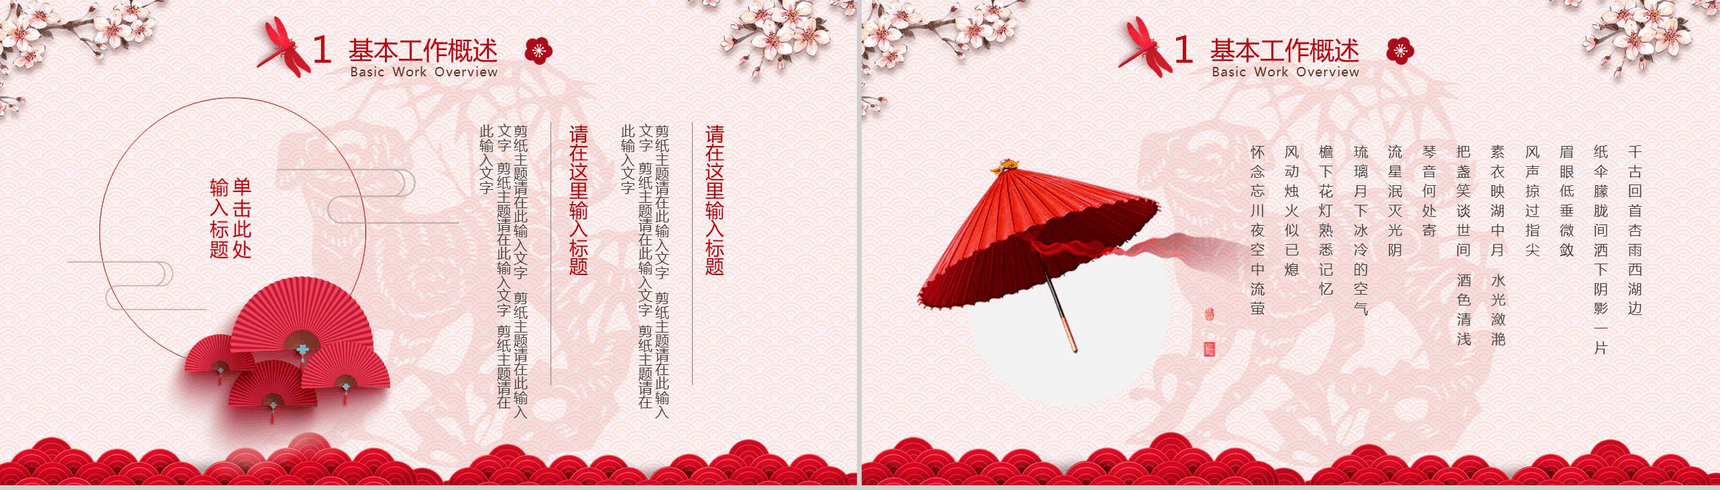 清新粉色中国风工作总结汇报年会活动策划PPT模板-5